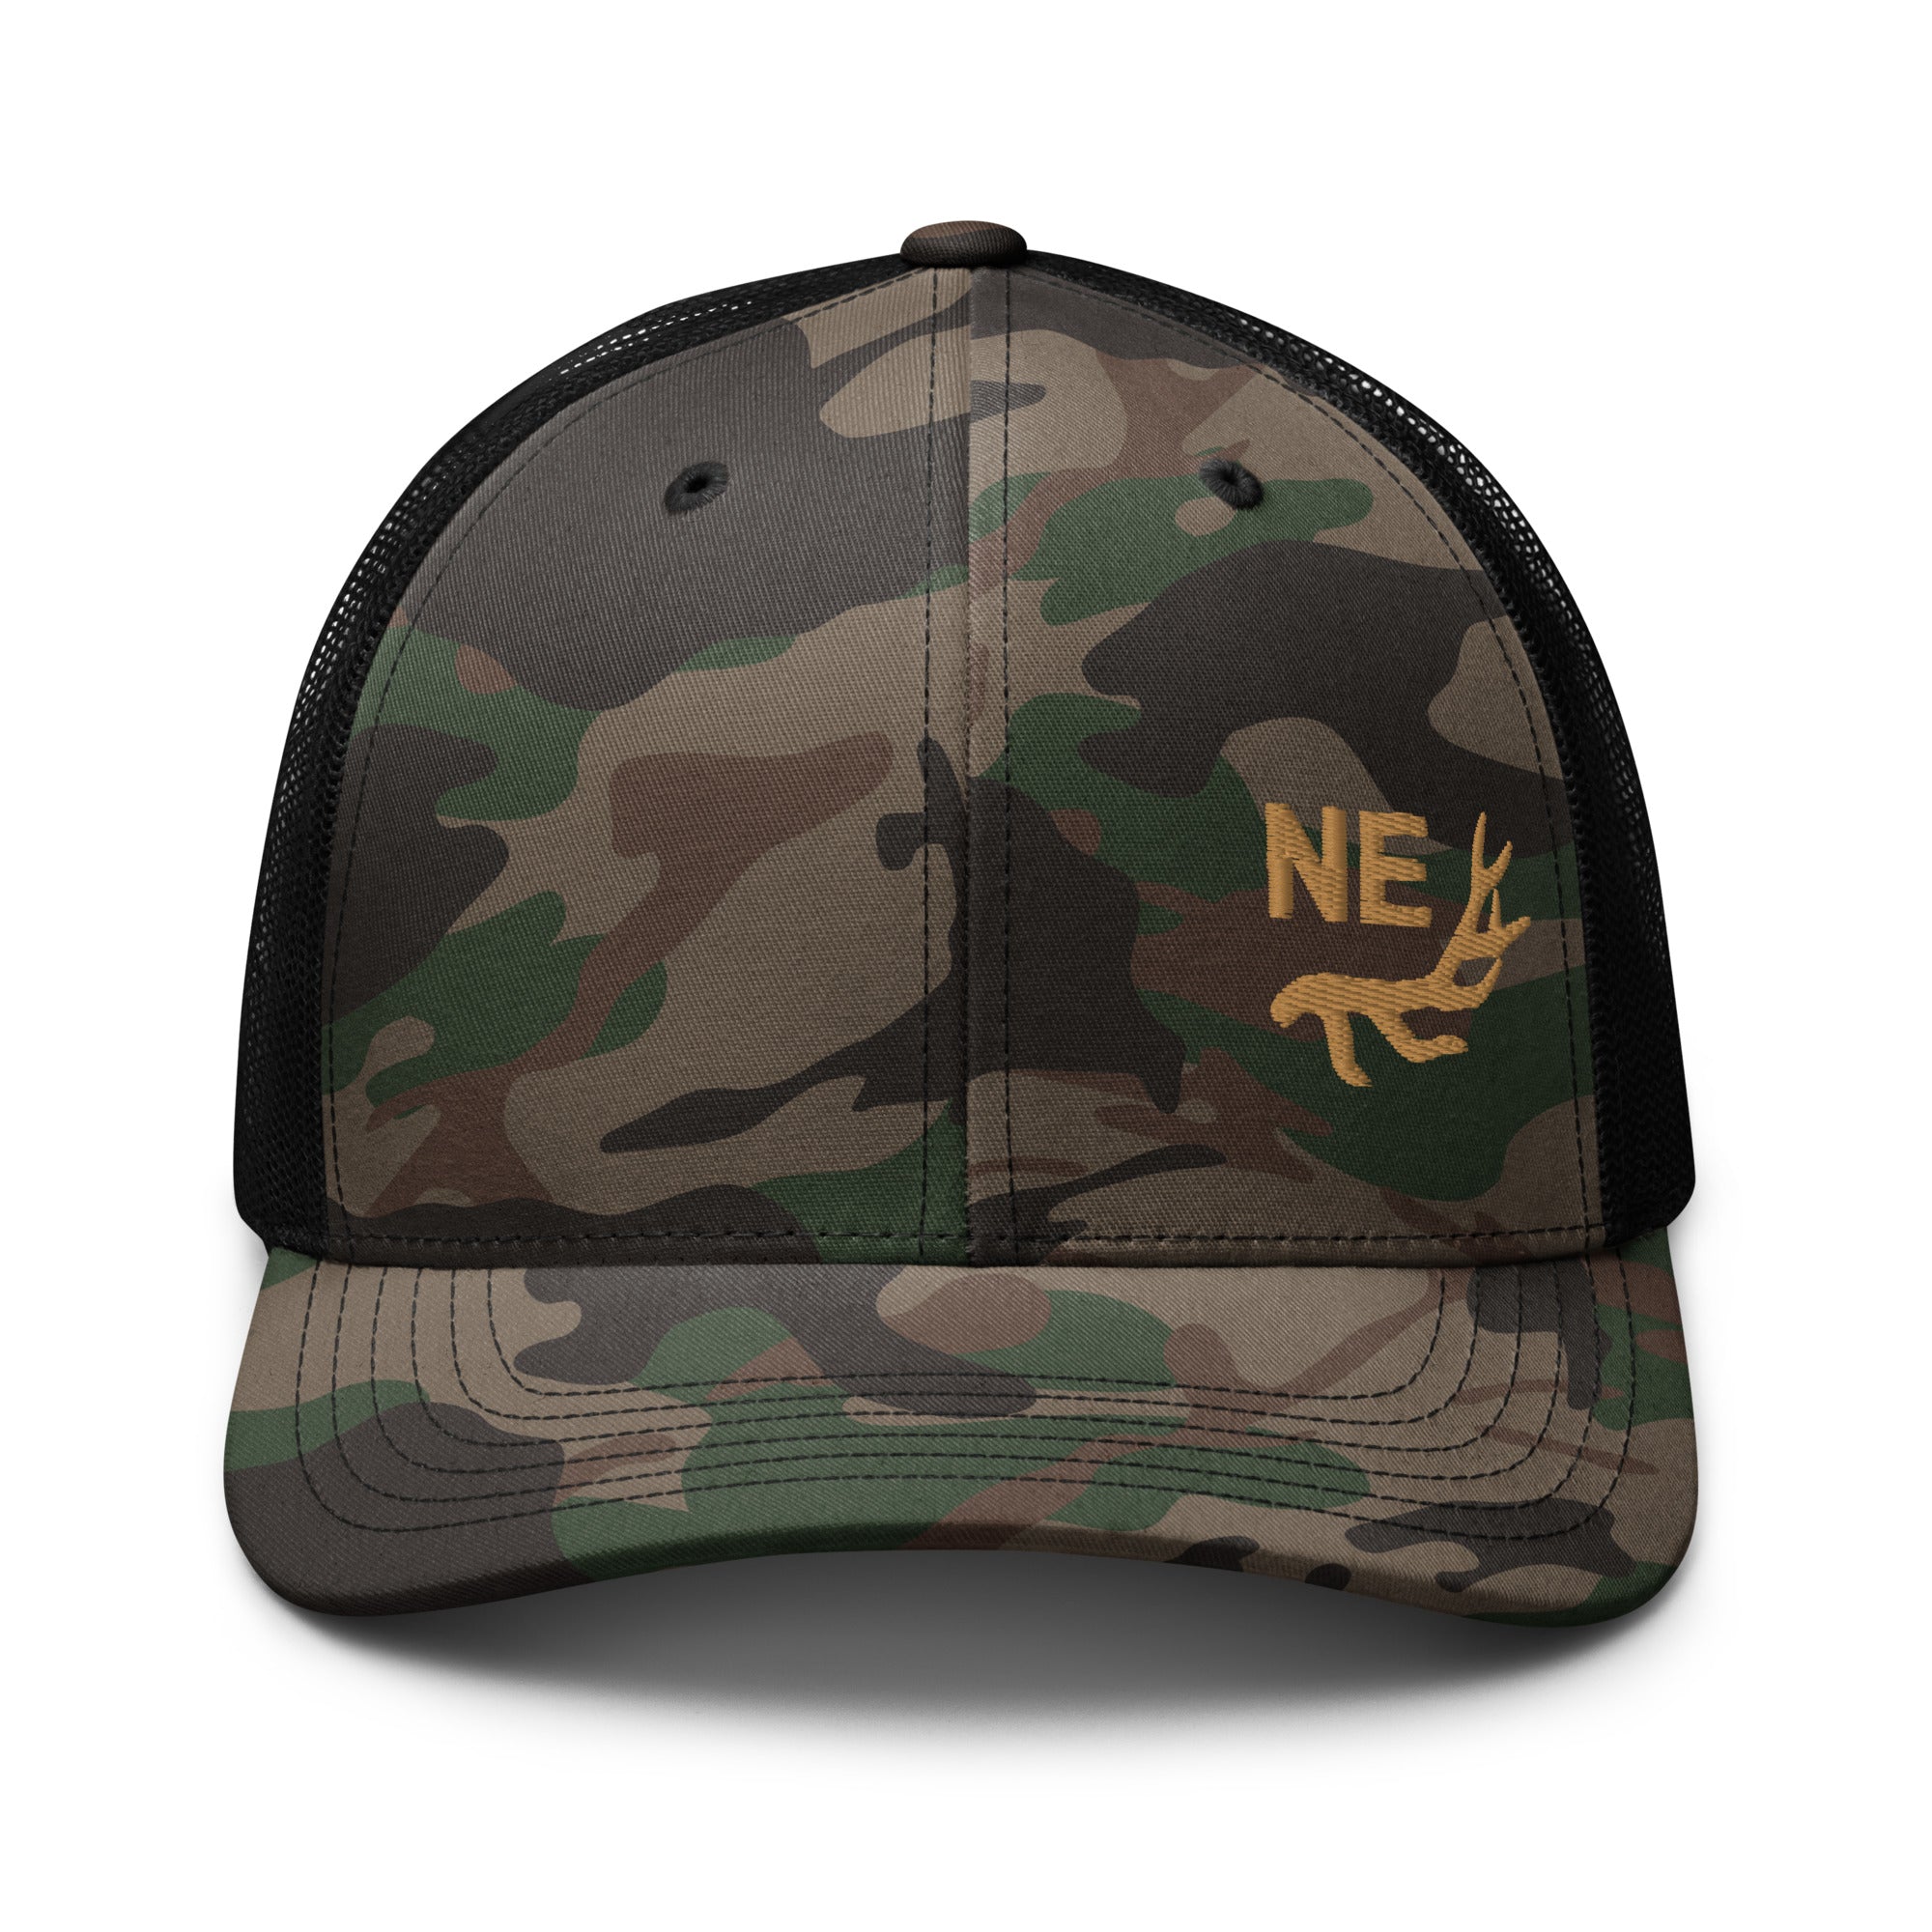 camouflage-trucker-hat-camo-black-front-655e6264e921c.jpg